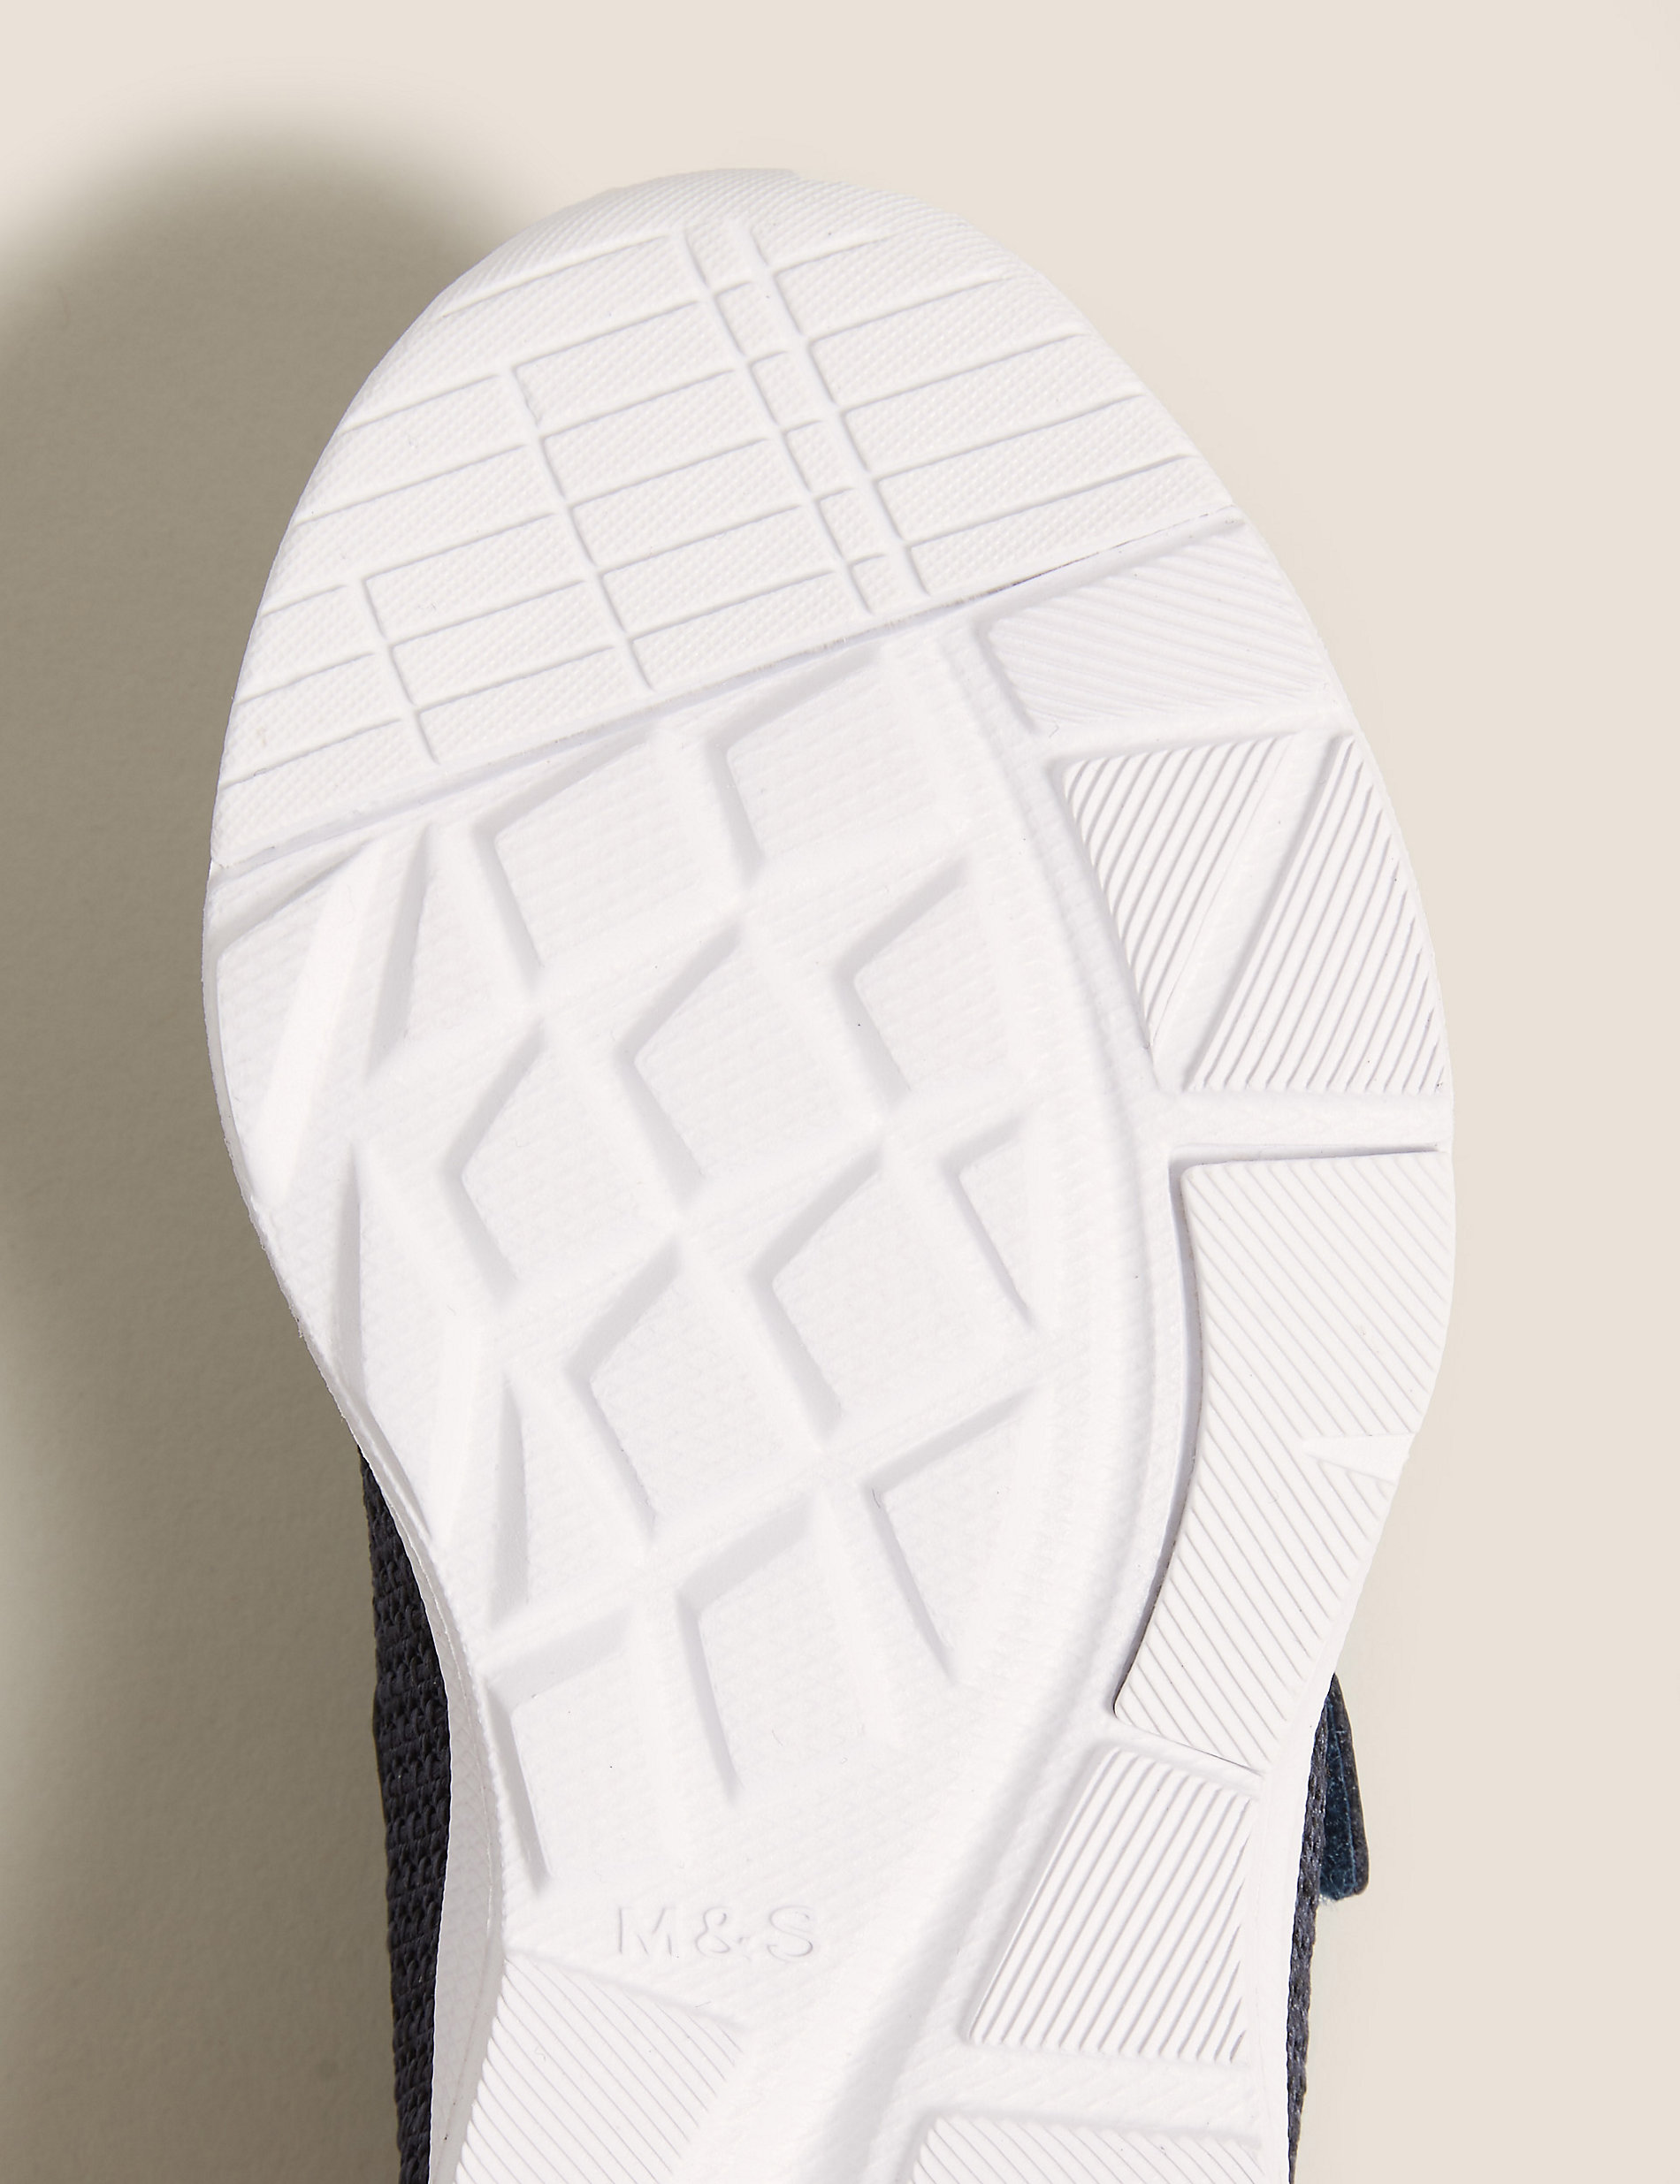 حذاء رياضي Freshfeet™‎‎‎ للأطفال بشريط لاصق فيلكرو (3 صغير - 3 كبير)